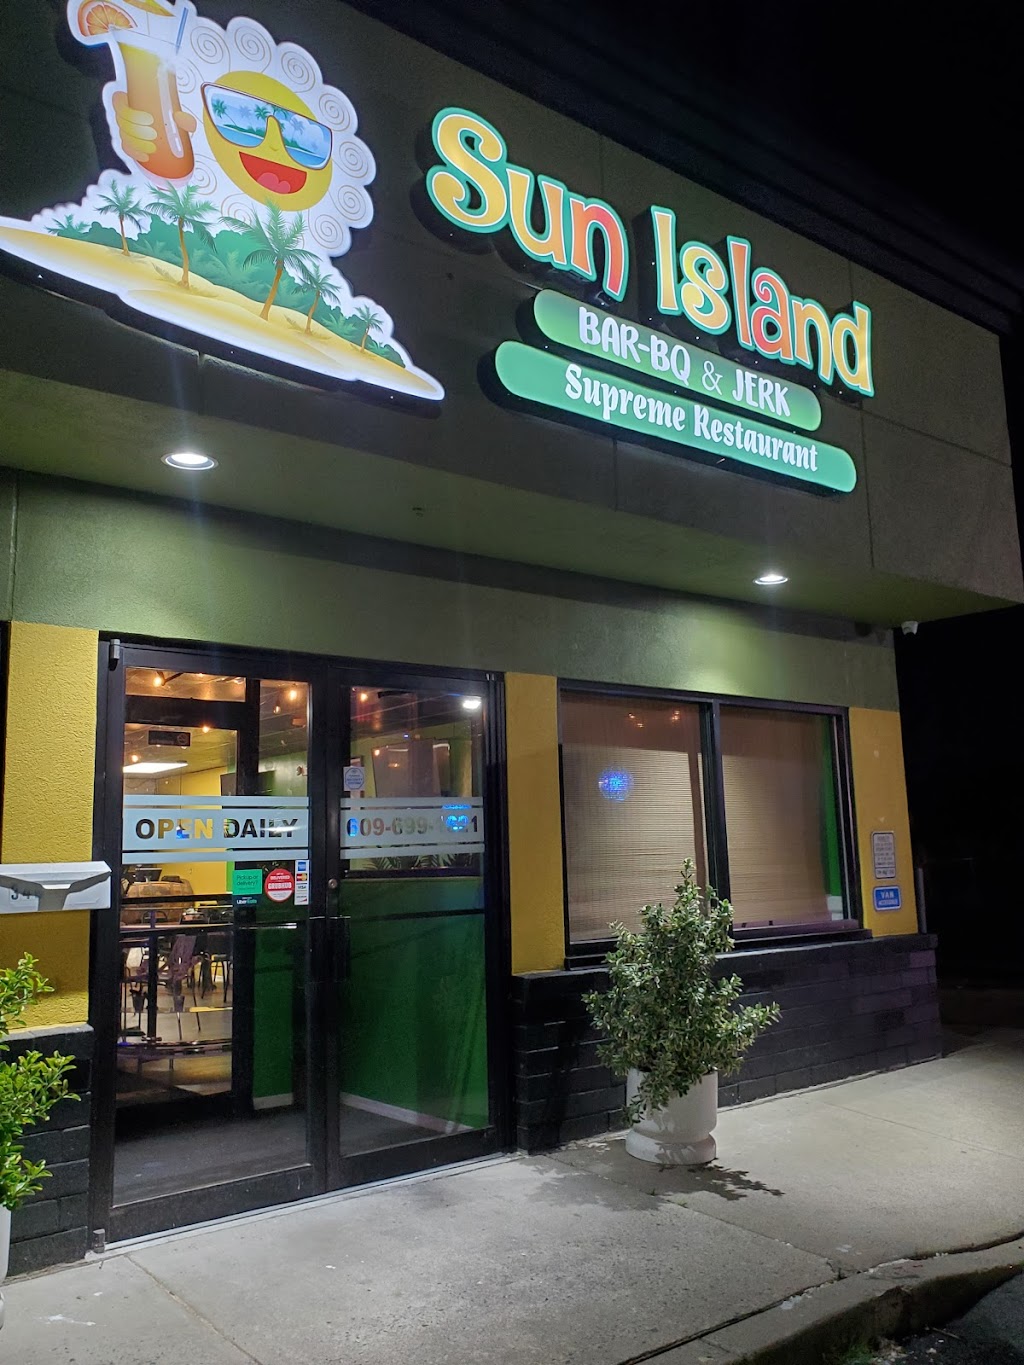 Sun Island Bar-BQ & Jerk Jamaican Restaurant | 34 US-130, Burlington, NJ 08016 | Phone: (609) 699-1621